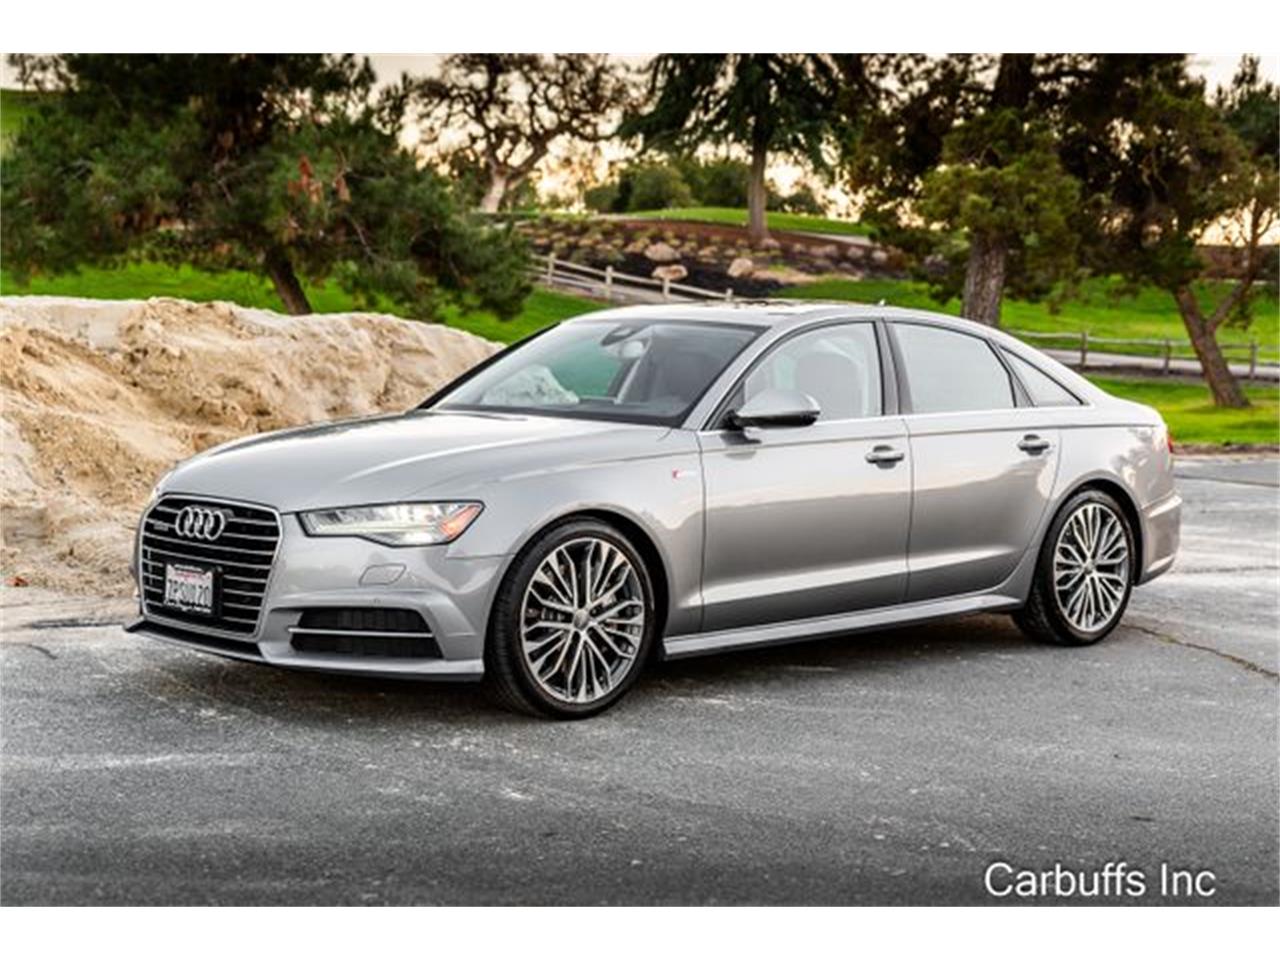 For Sale: 2016 Audi A6 in Concord, California for sale in Concord, CA